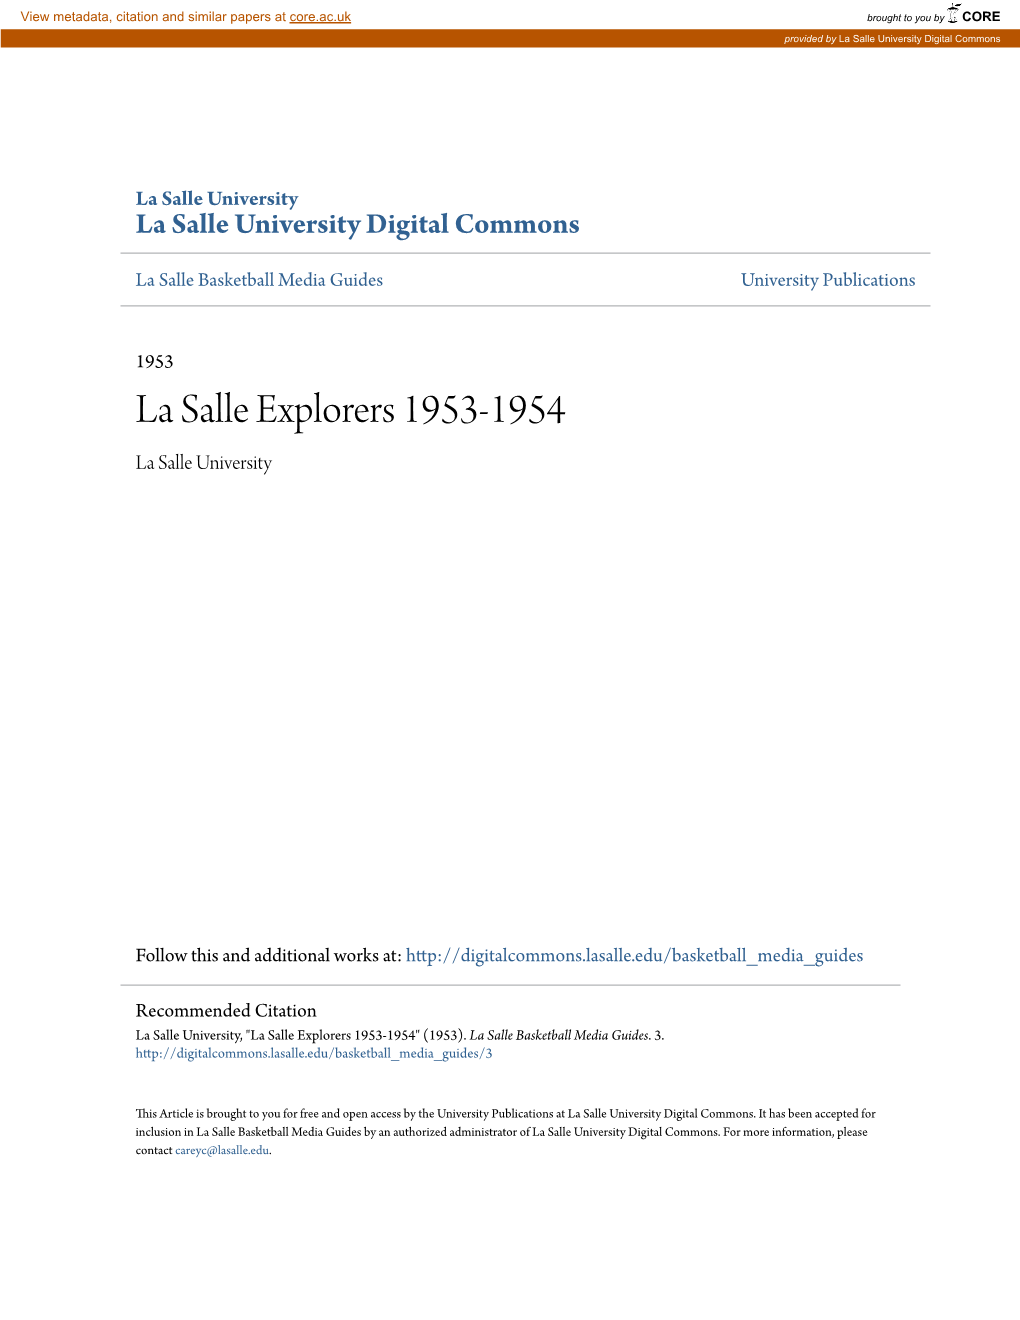 La Salle Explorers 1953-1954 La Salle University